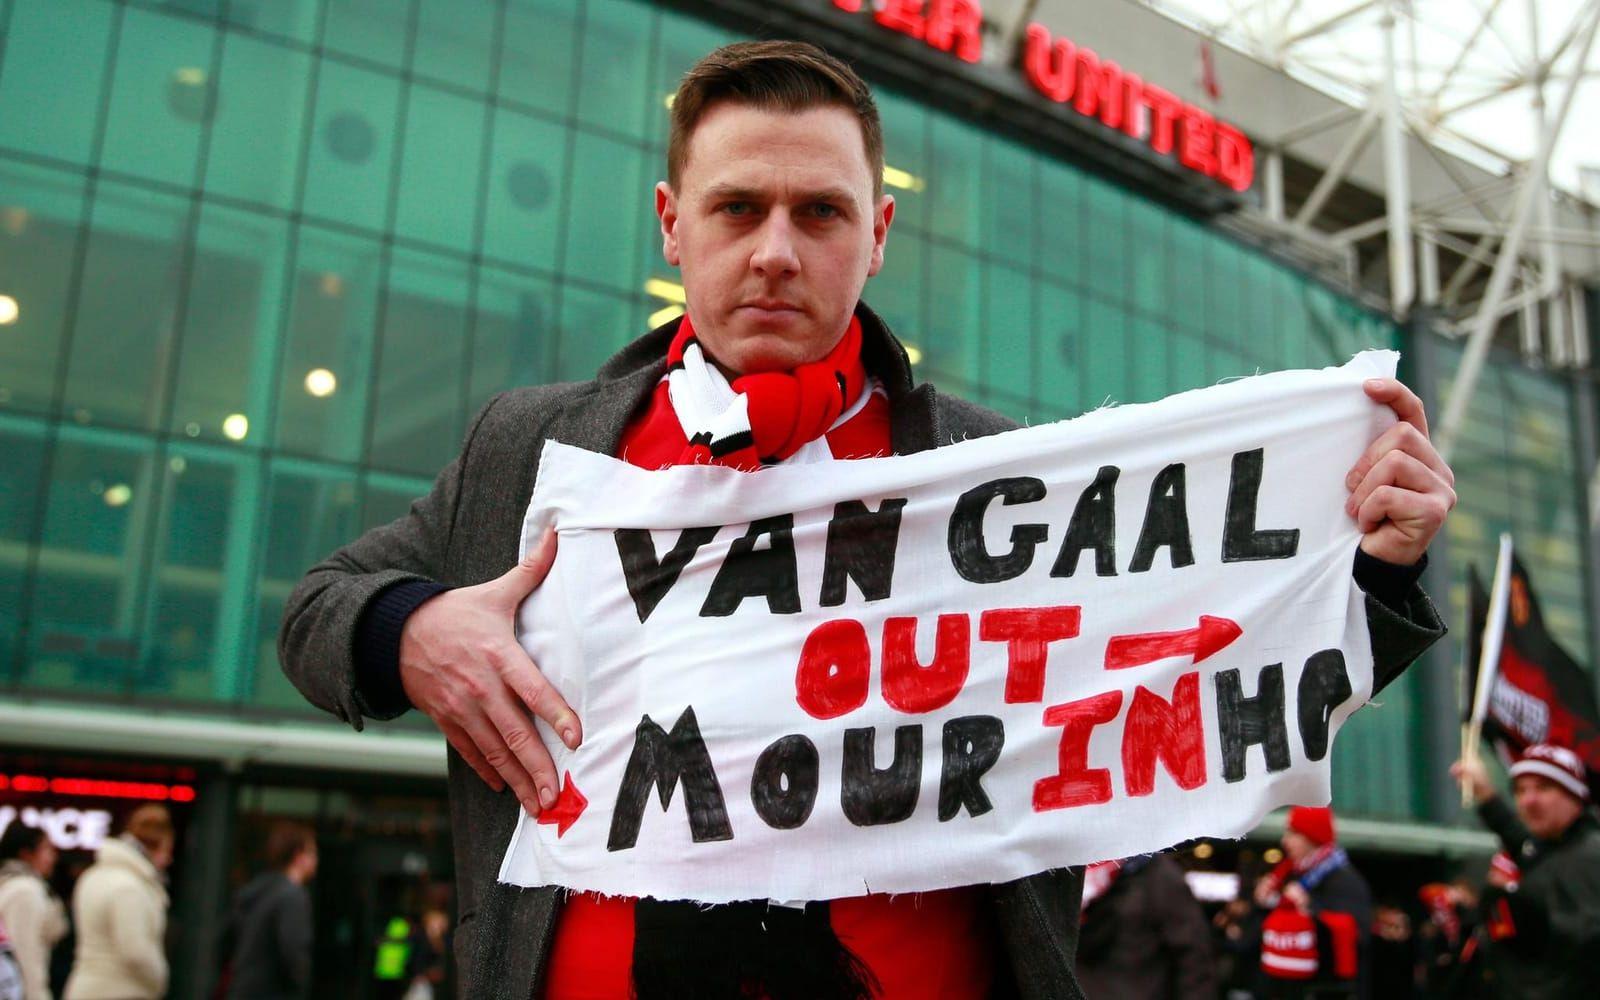 Åtminstone en Manchester United-supporter verka få sin vilja igenom. Foto: Bildbyrån